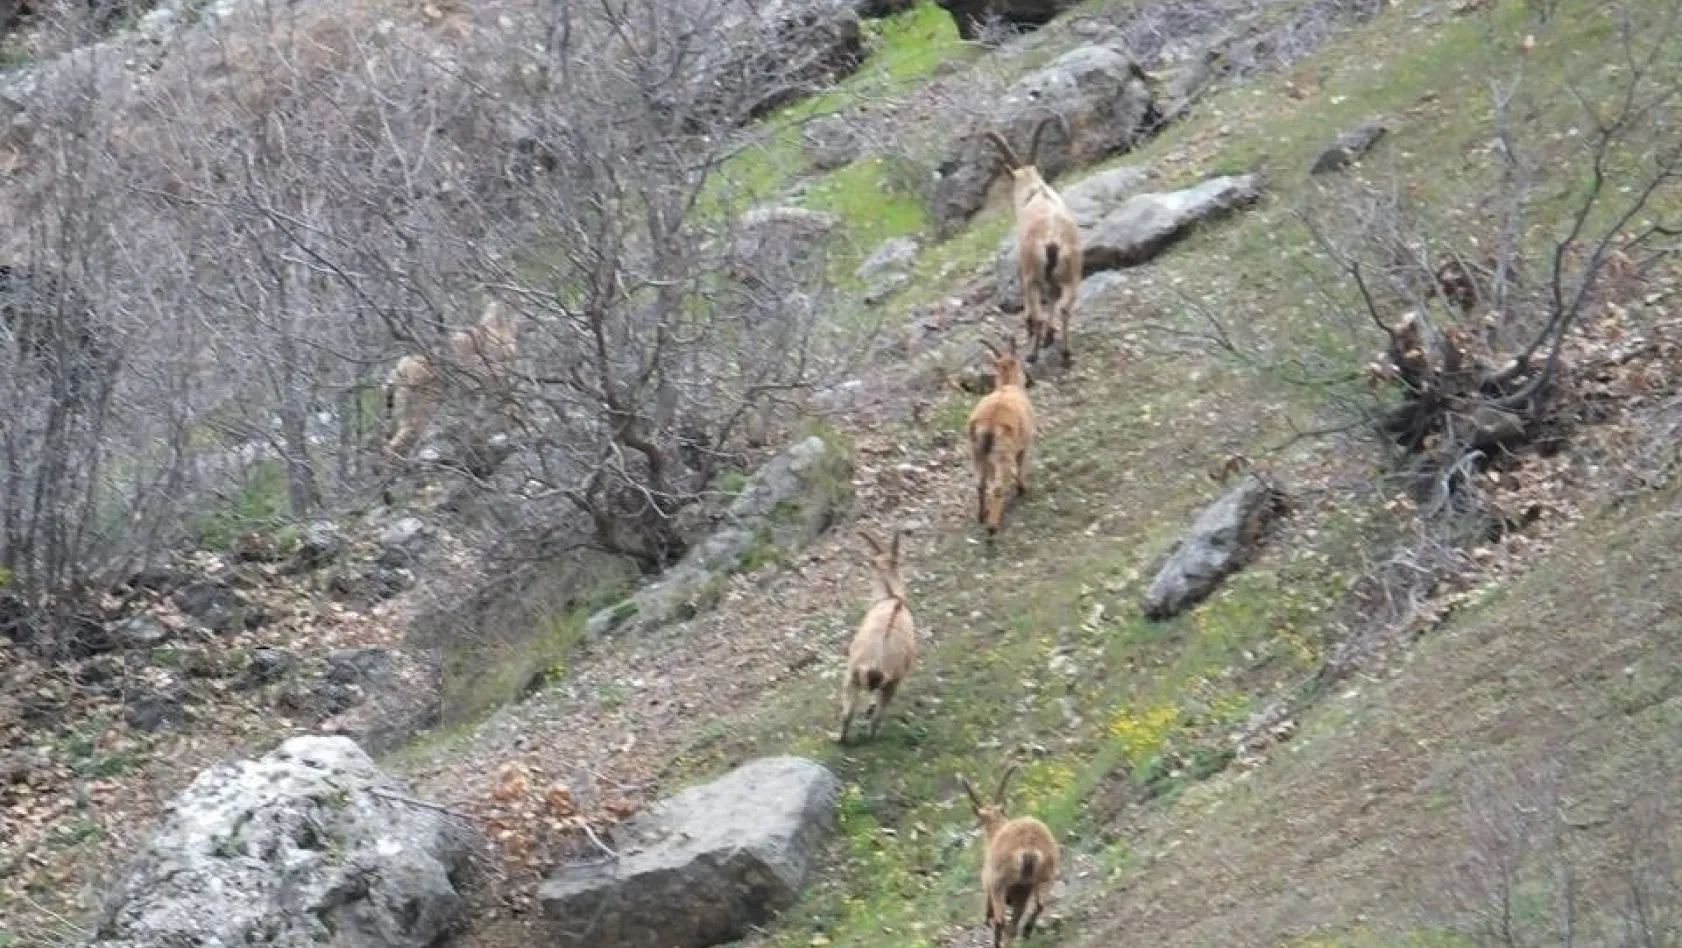 (Cumartesi geçilecek) Yaban keçileri sürü halinde görüntülendi
